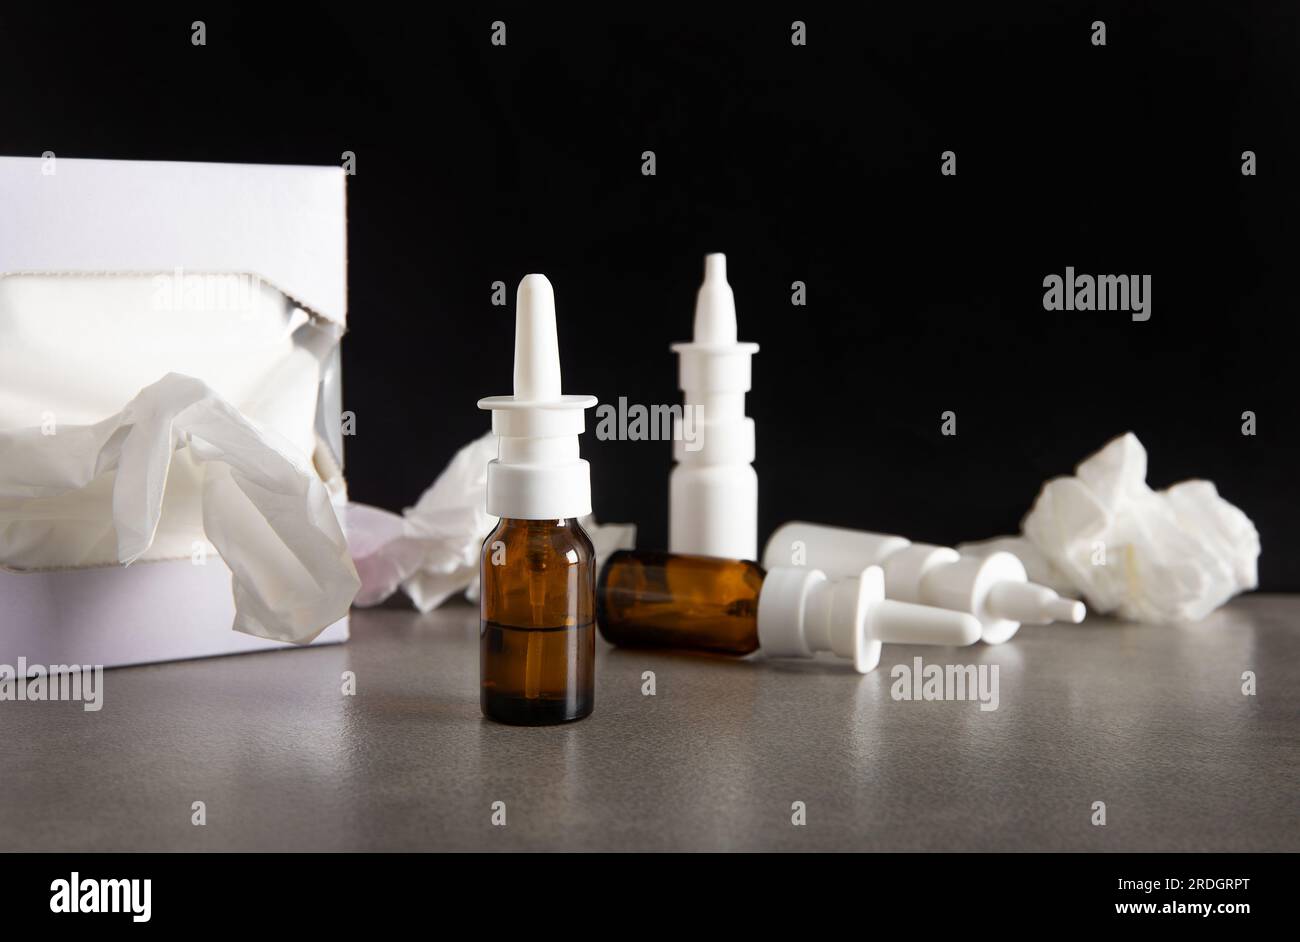 Viele Nasenspray-Flaschen Konzept. Bei zu langer Verwendung von Nasenspray verursacht es eine Stauung, anstatt sie zu verhindern, Rhinitis medicamentosa. Stockfoto